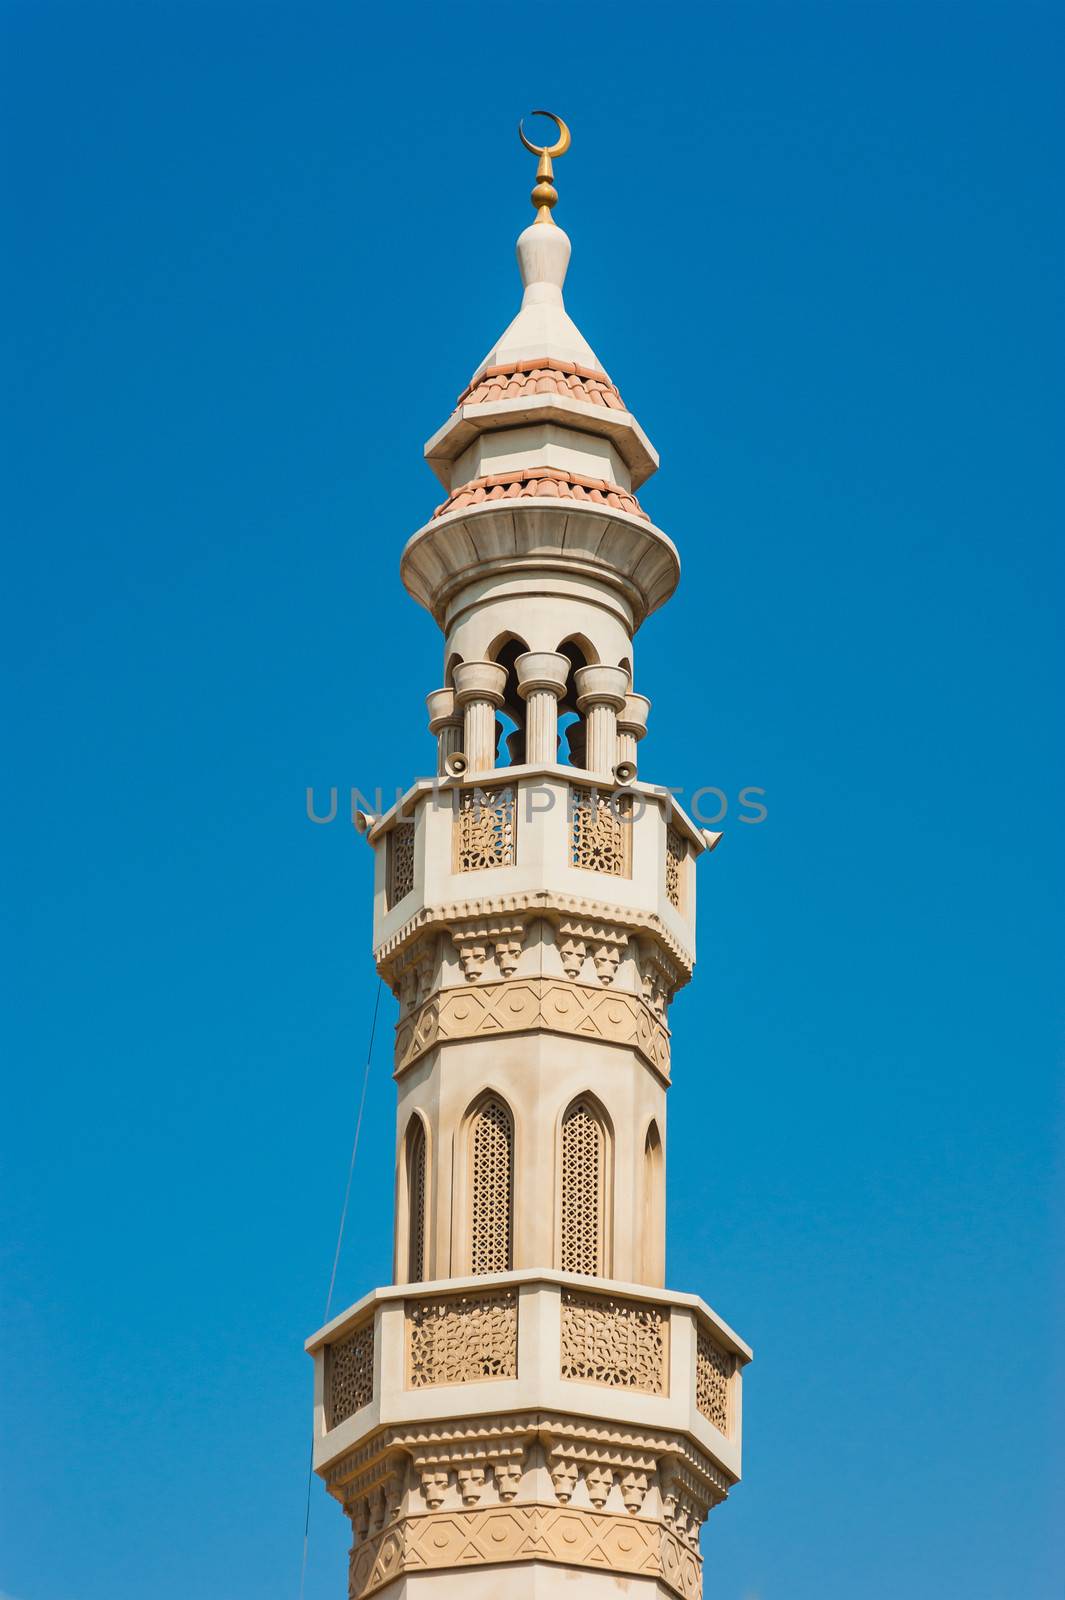 The minaret of a mosque in Dubai